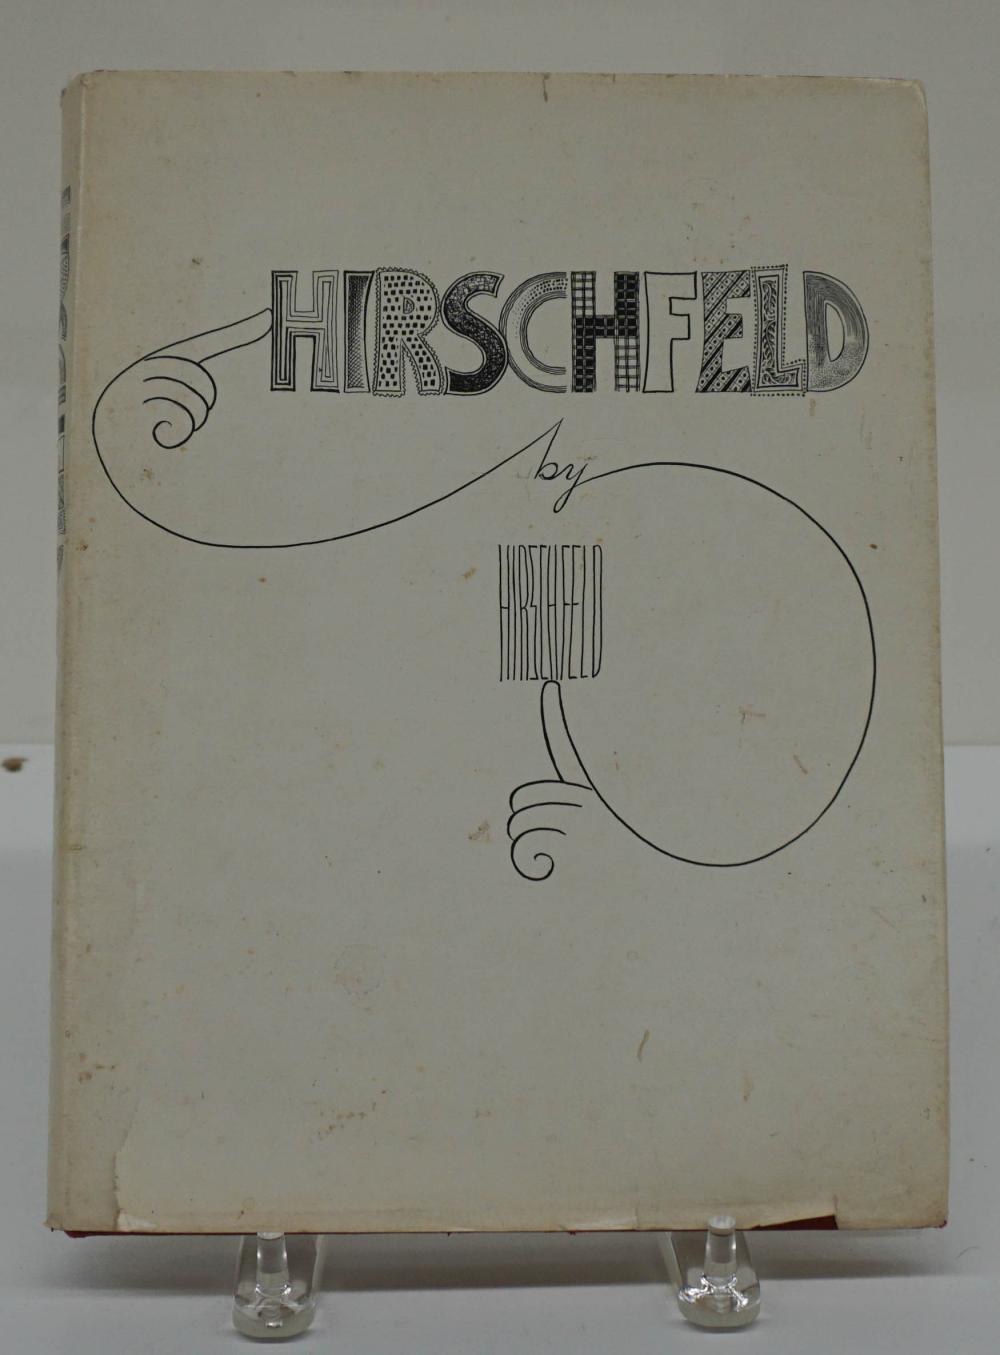 HIRSCHFELD BY ALBERT HIRSCHFELD 3310cd